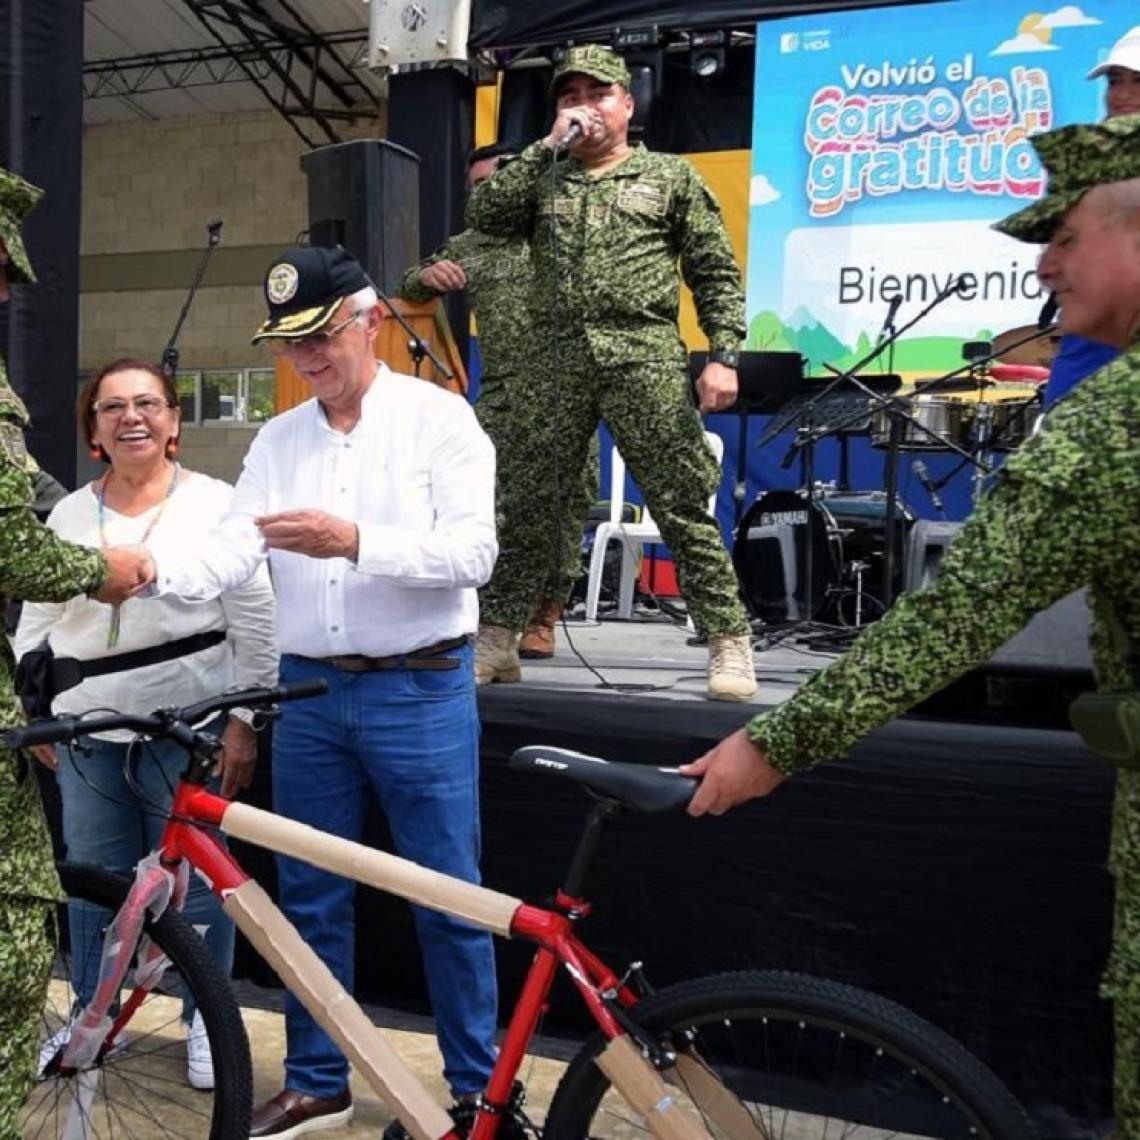 Arrancó formalmente el Correo de la Gratitud llevando alegría a todos los soldados y policías de Colombia